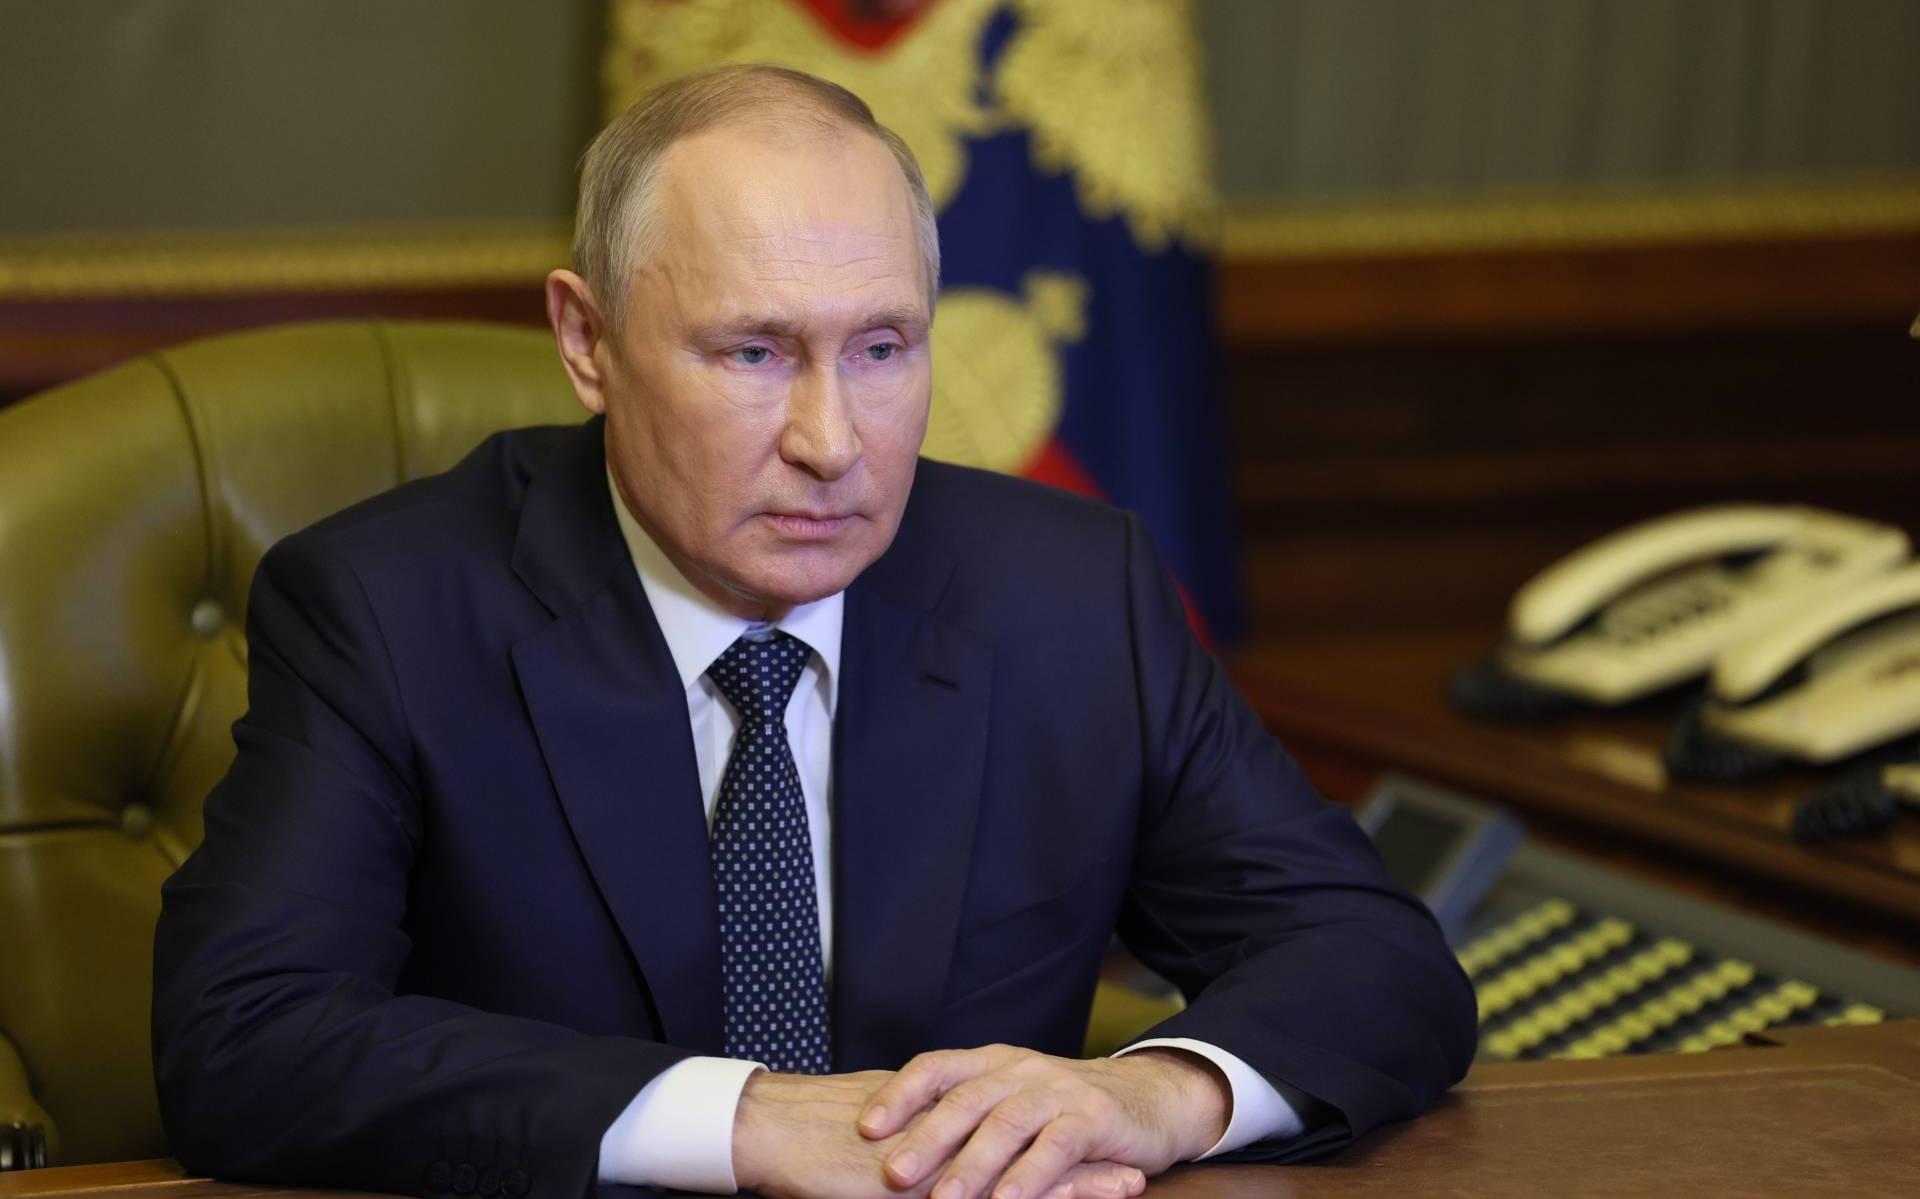 Poetin: pijpleidingen Nord Stream kunnen gerepareerd worden